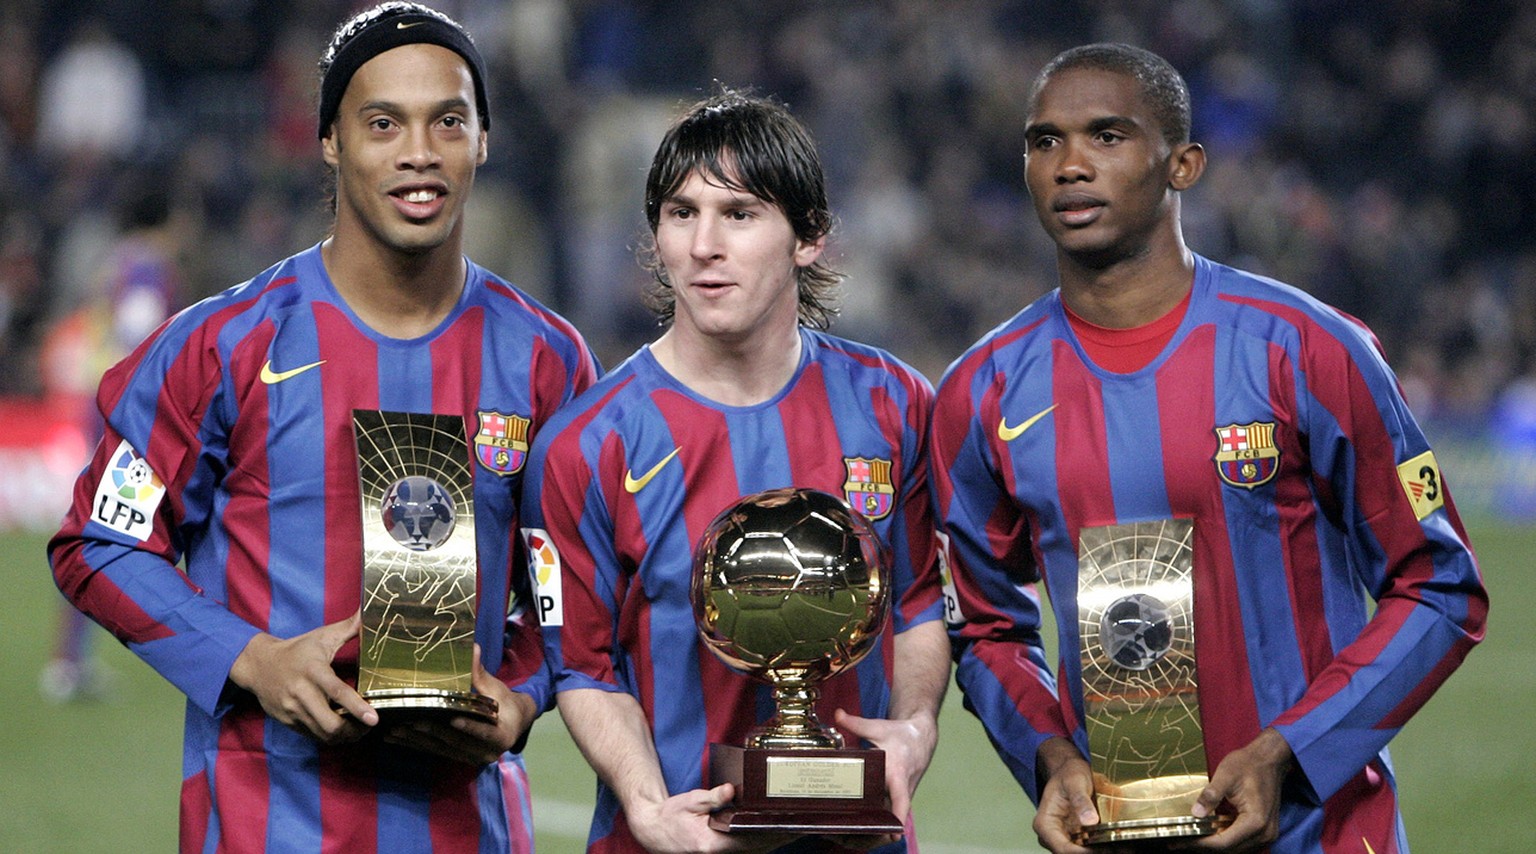 20. Dezember 2005: Die Barcelona-Spieler Ronaldinho (Weltfussballer), Lionel Messi (Golden Boy als weltbester U21-Spieler) und Samuel Eto'o (3. Platz Weltfussballer-Wahl) posieren mit ihren Trophäen.